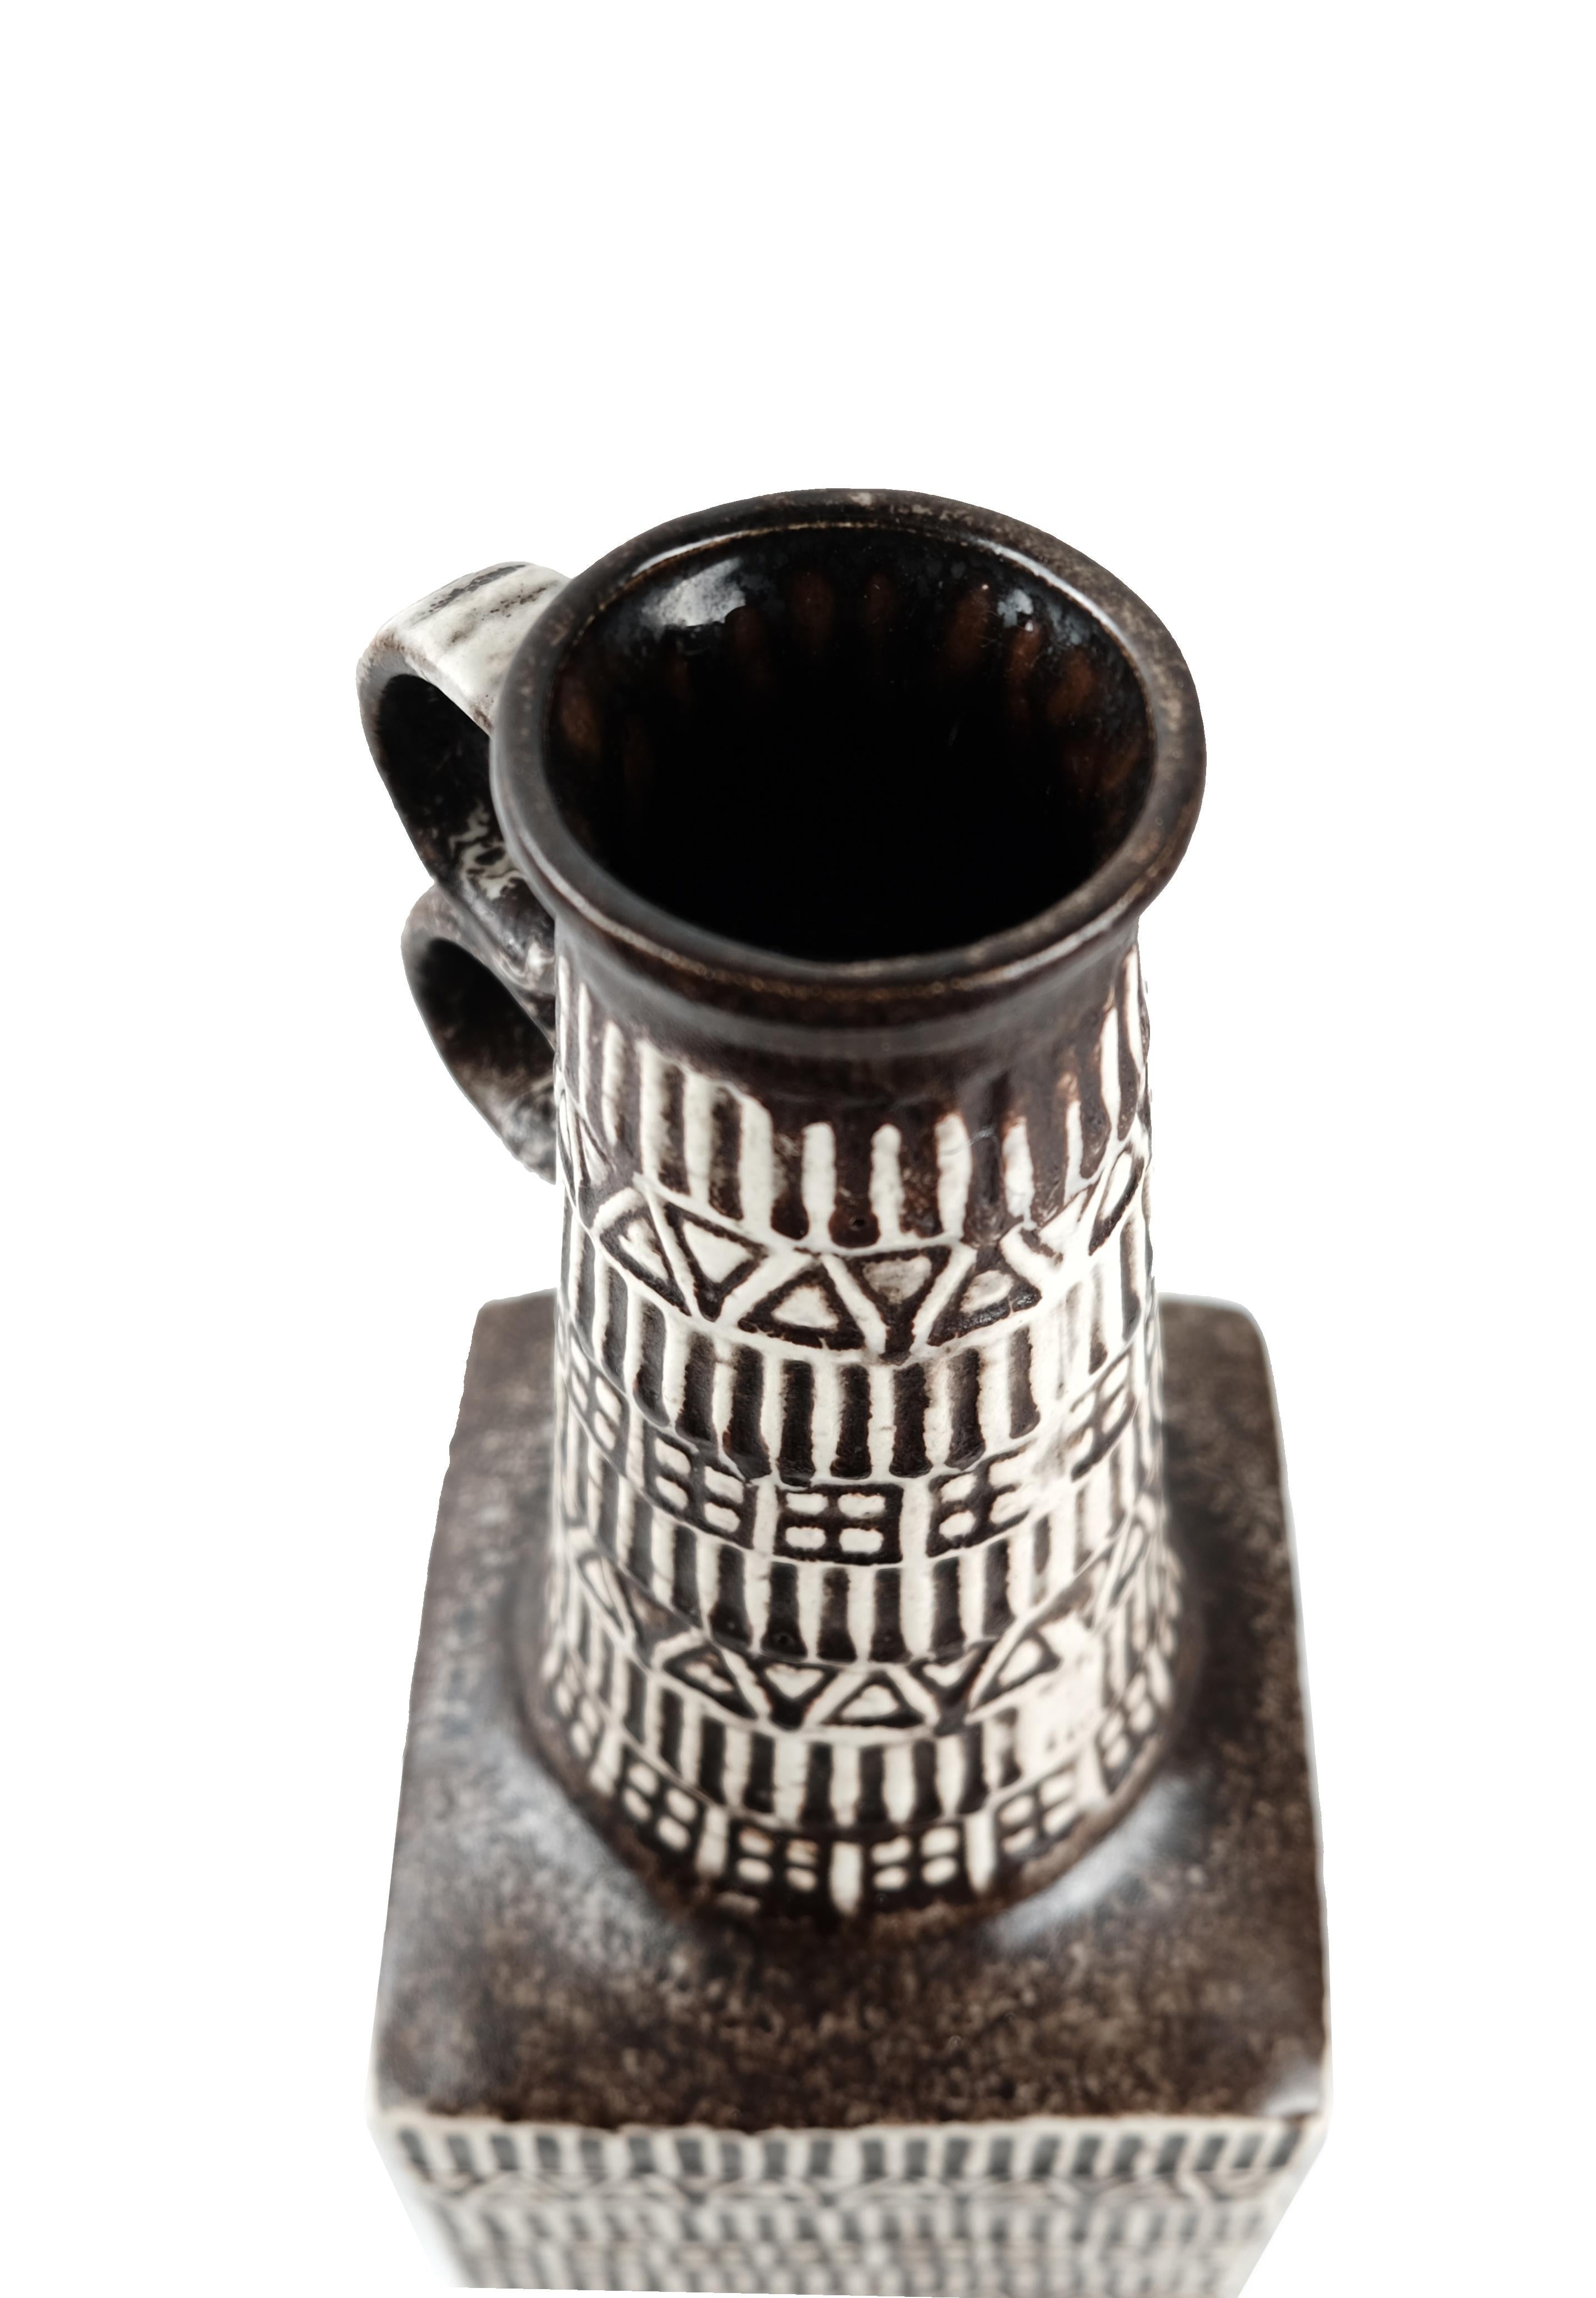 Magnifique vase en Bay Keramik avec un motif runique intégré, conçu par Bodo Mans. Ce modèle était très populaire dans les années 1960. Ce grand vase est en excellent état et présente une glaçure mate brune. Conçu par Bodo Mans pour la société